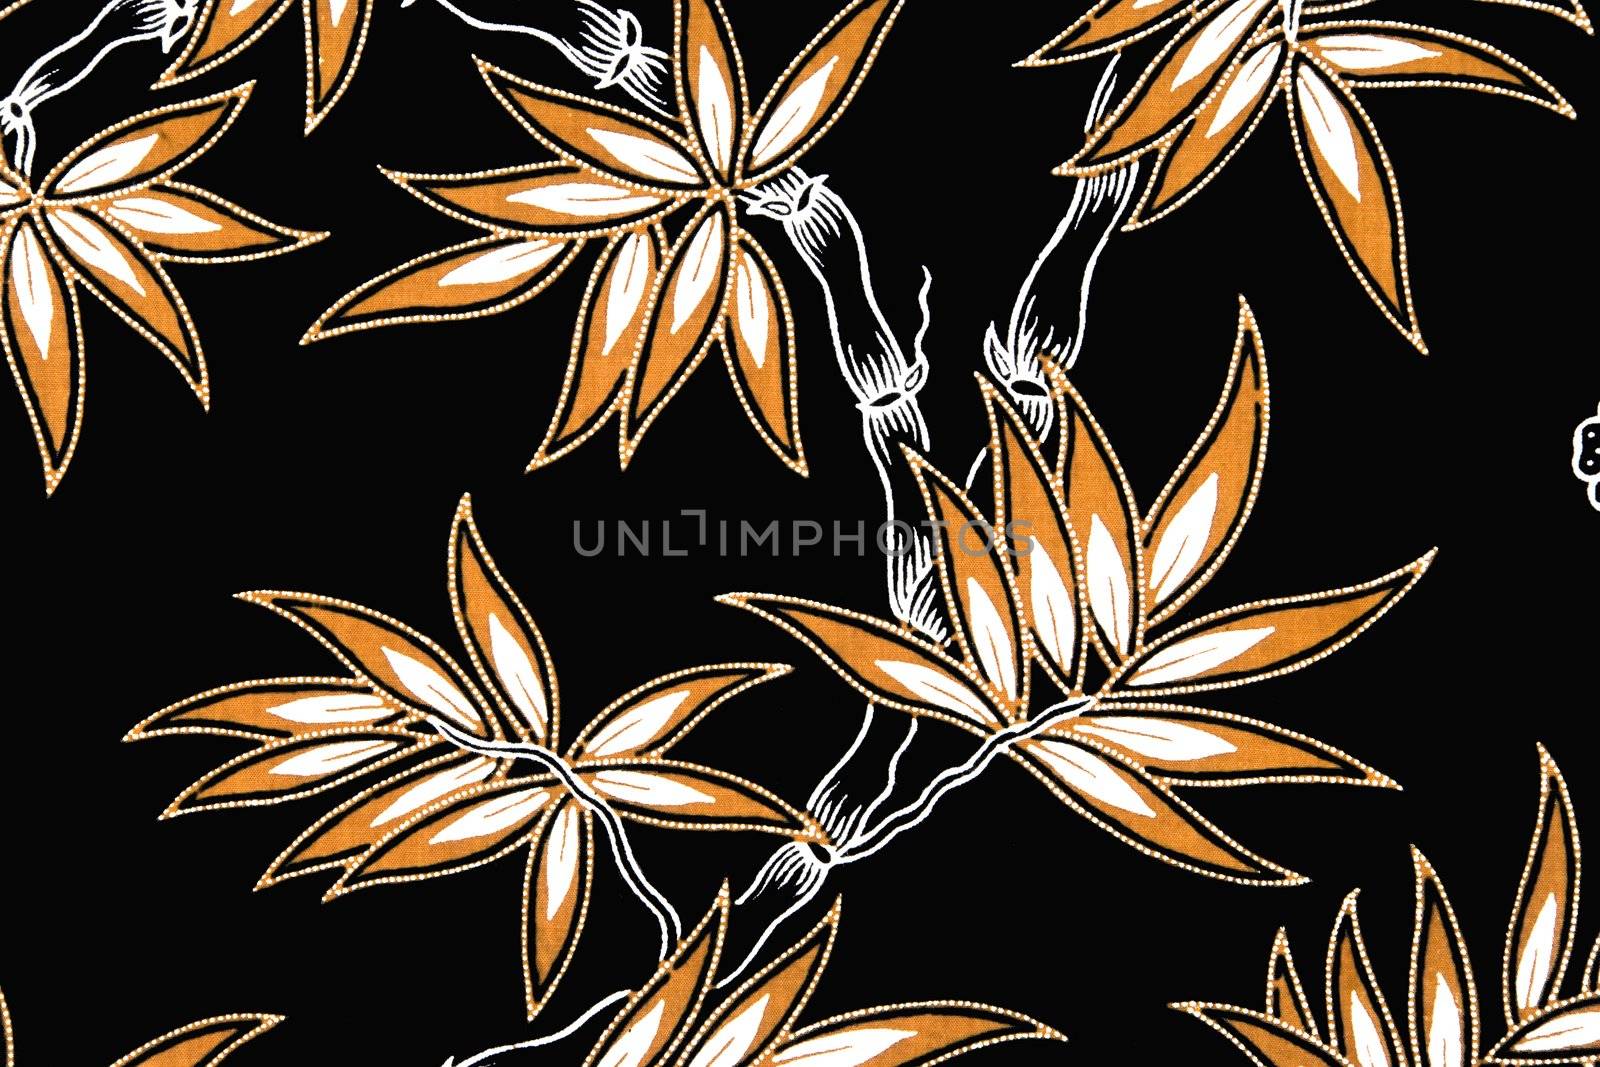 Indonesian Batik Sarong by shariffc